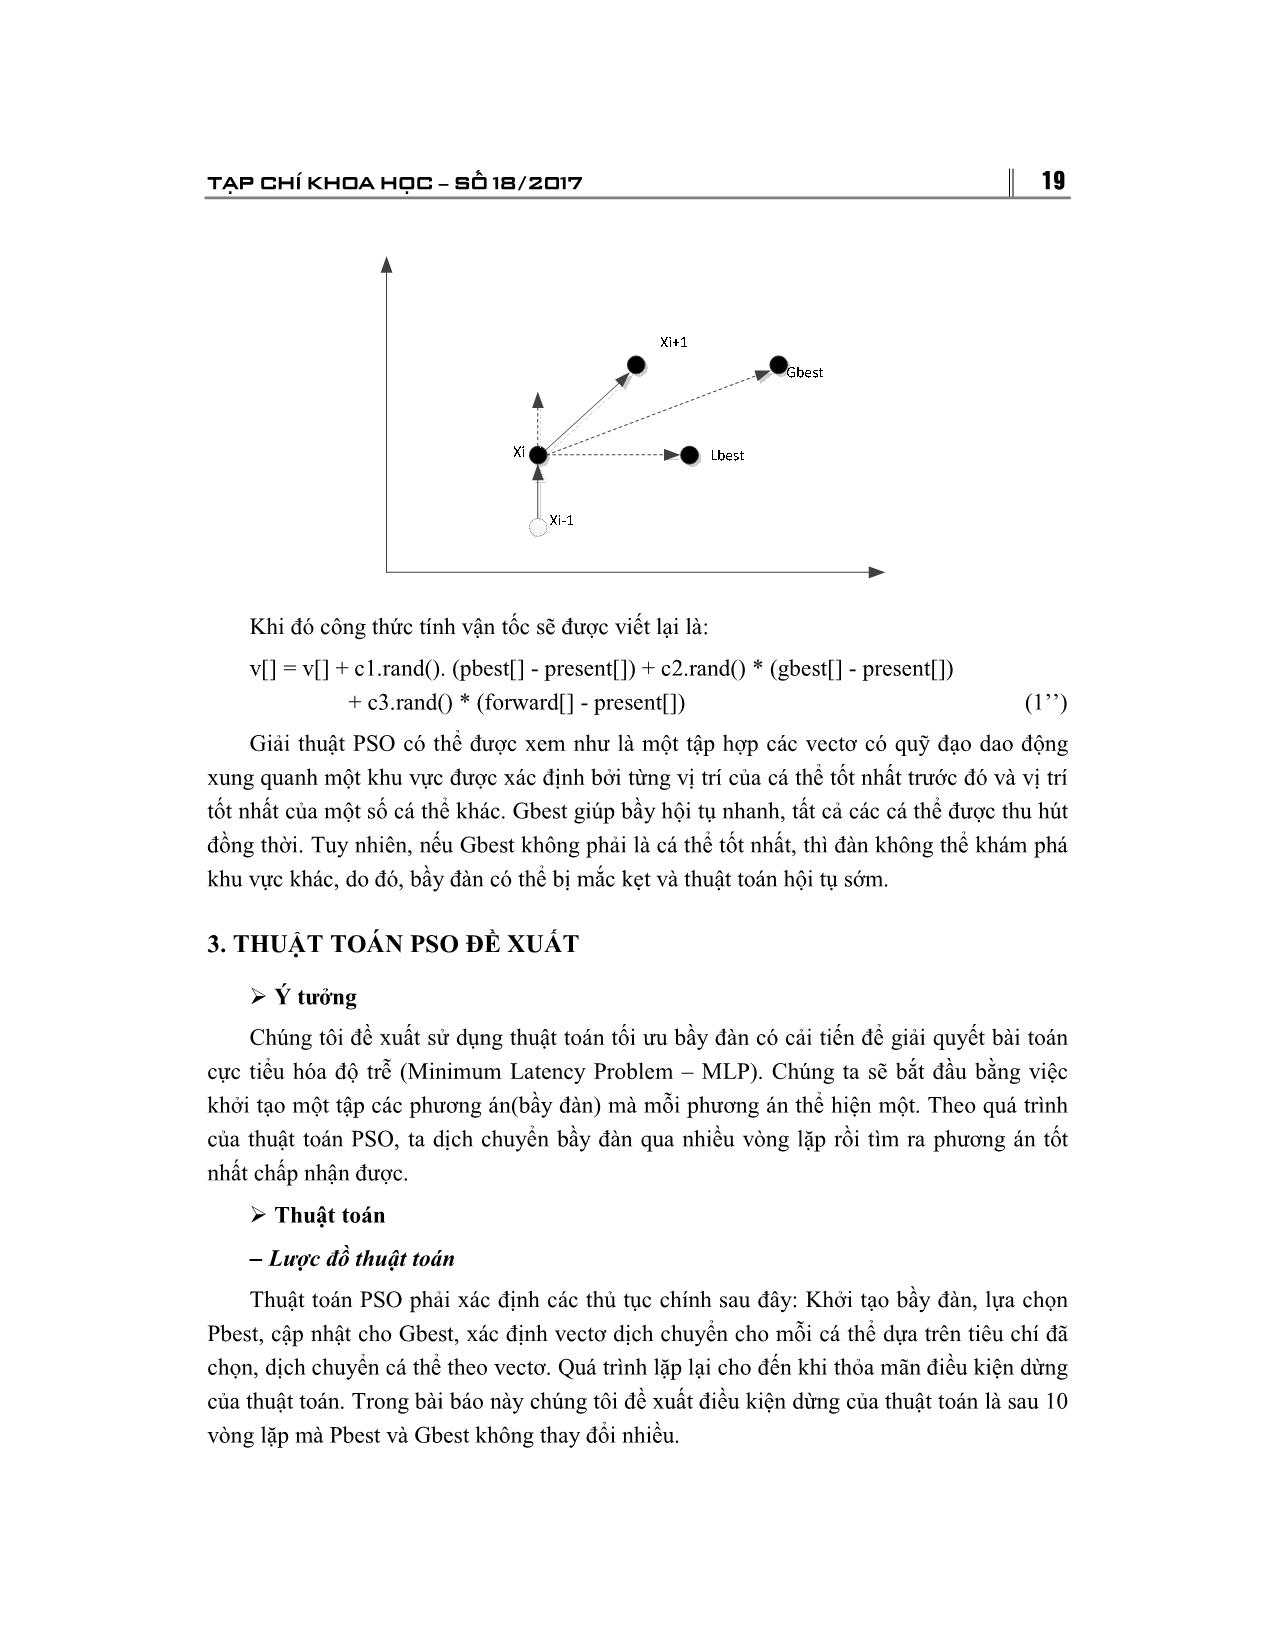 Ứng dụng giải thuật tối ưu bầy đàn vào bài toán cực tiểu hóa độ trễ trang 5